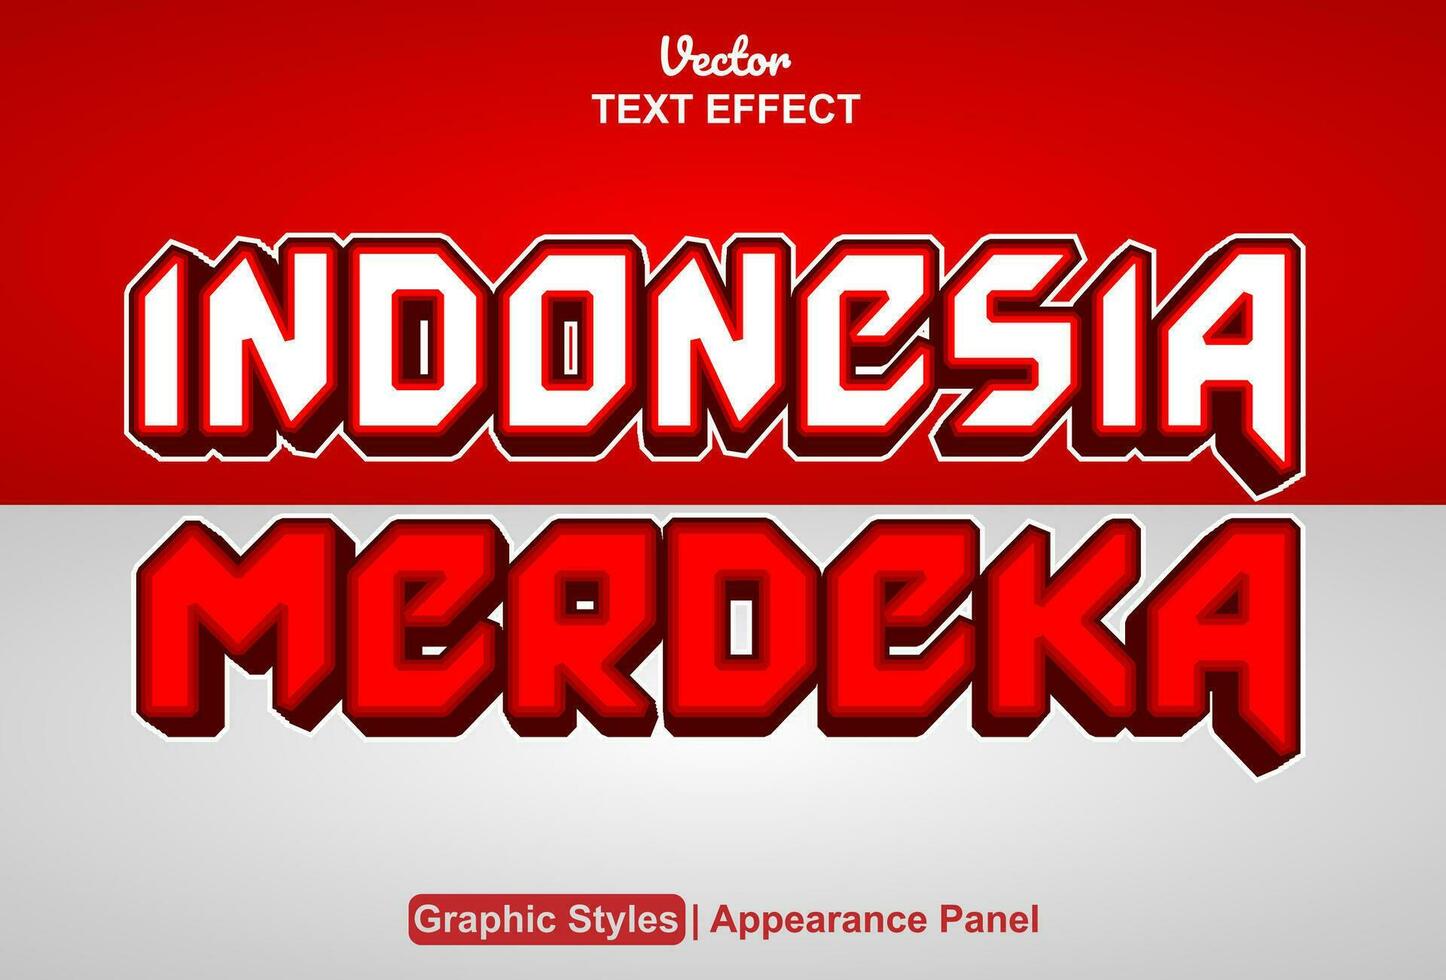 Indonesia Merdeka texto efecto con gráfico estilo y editable. vector